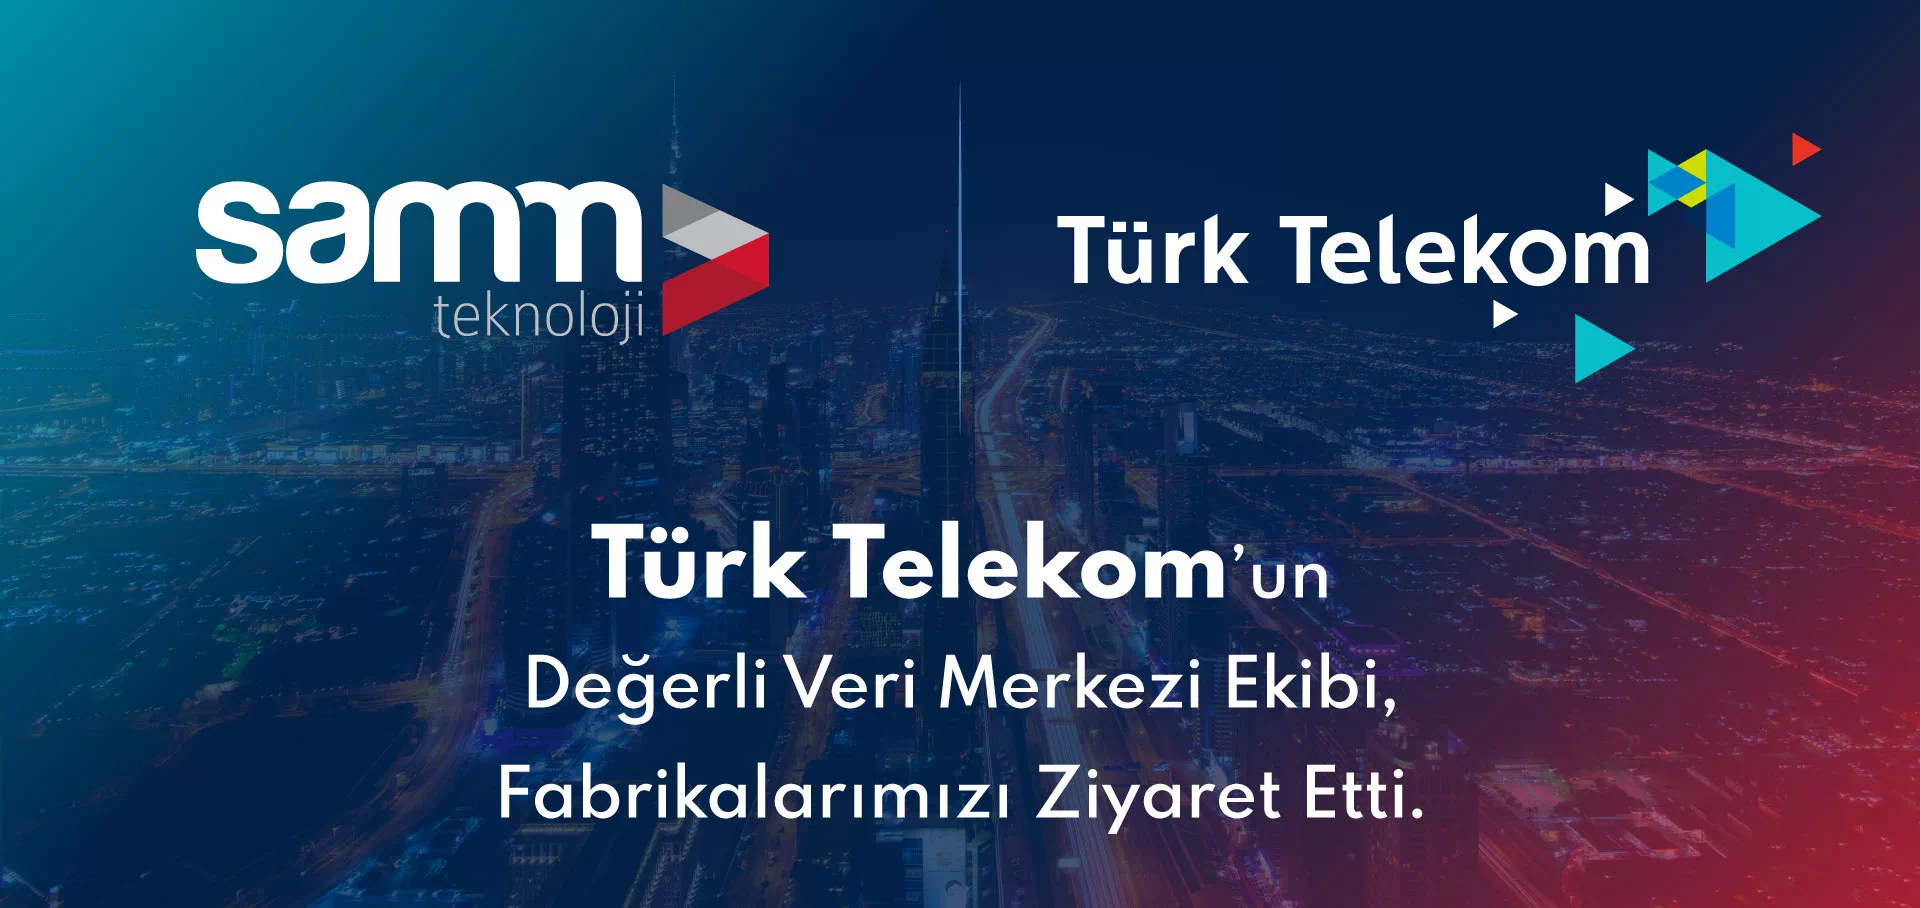 Türk Telekom’un Değerli Veri Merkezi Ekibi, Fabrikalarımızı Ziyaret Etti.